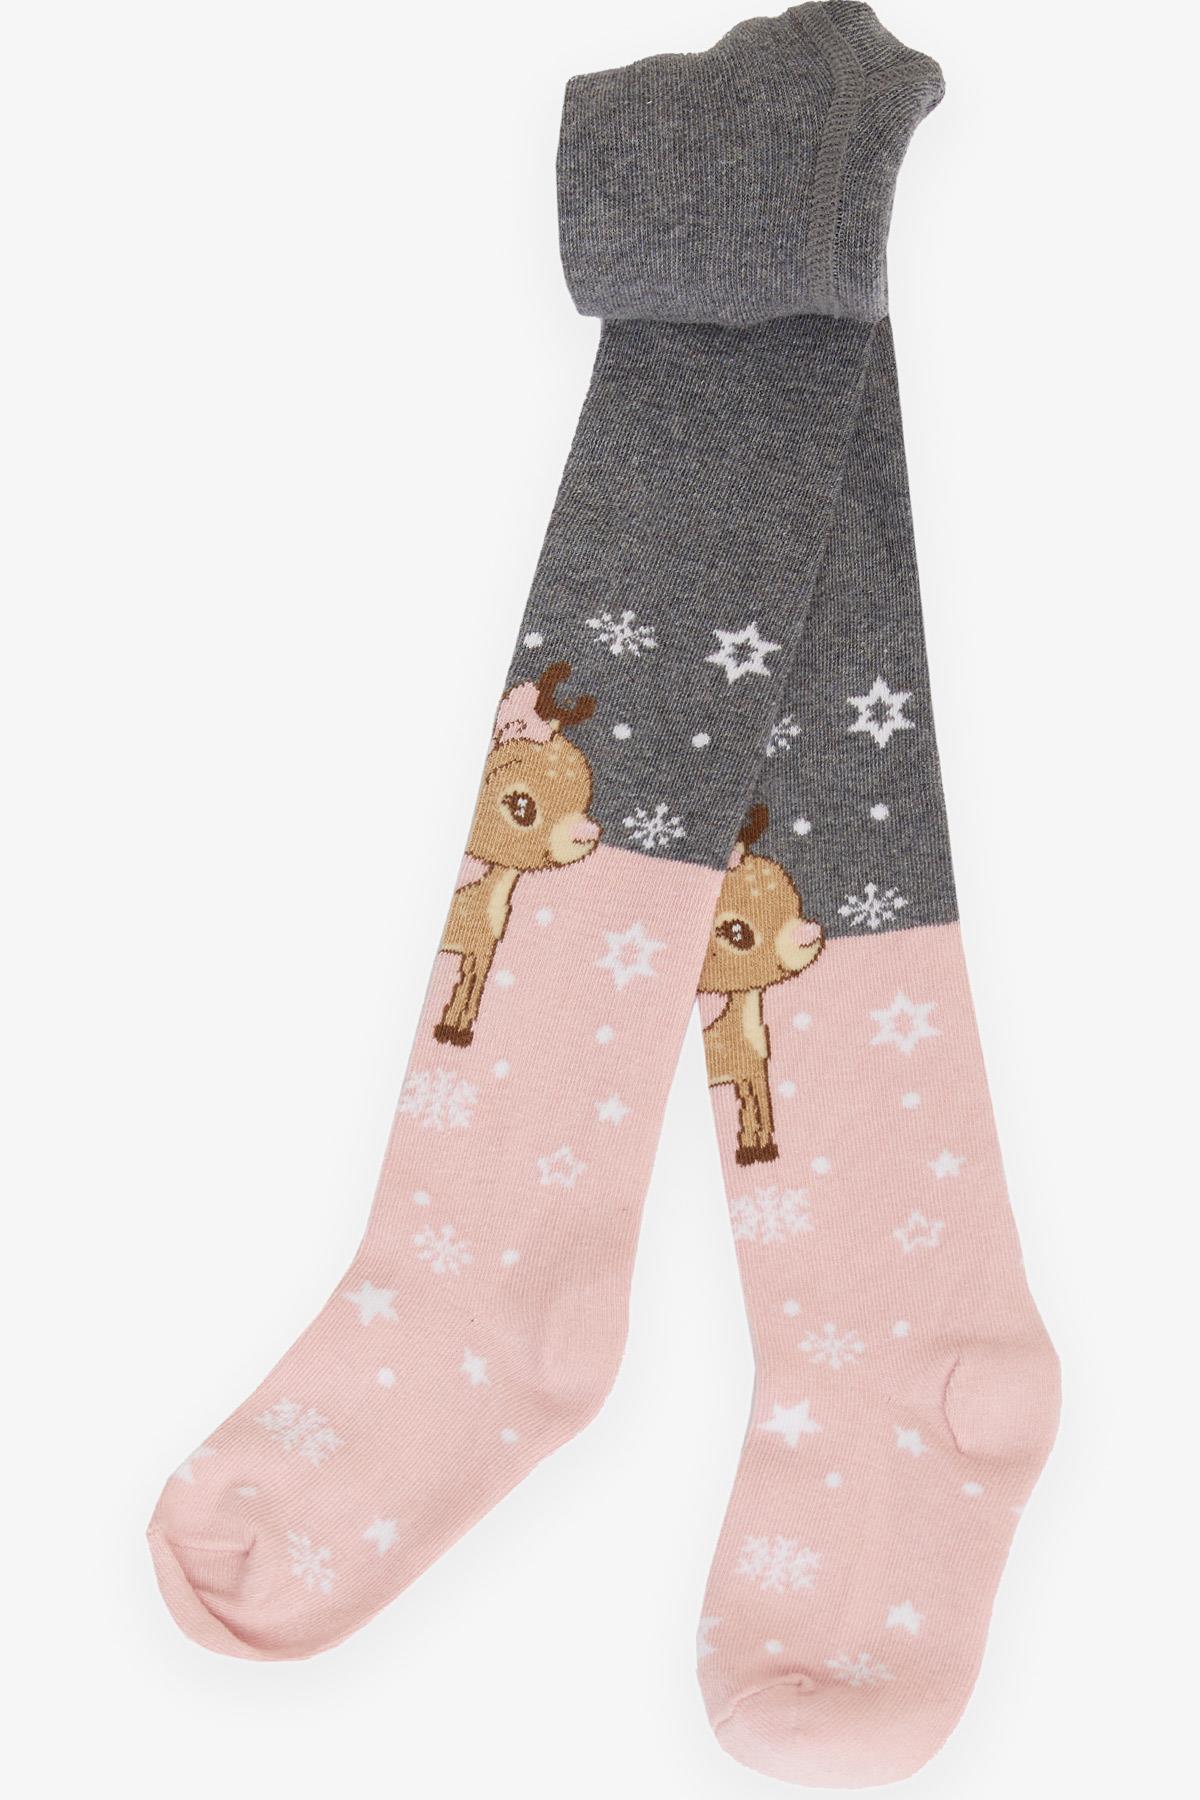 Kız Çocuk Külotlu Çorap Kış Temalı Sevimli Ceylan Baskılı Pembe 3-4 Yaş -  Bebek ve Çocuk Çorapları | Breeze